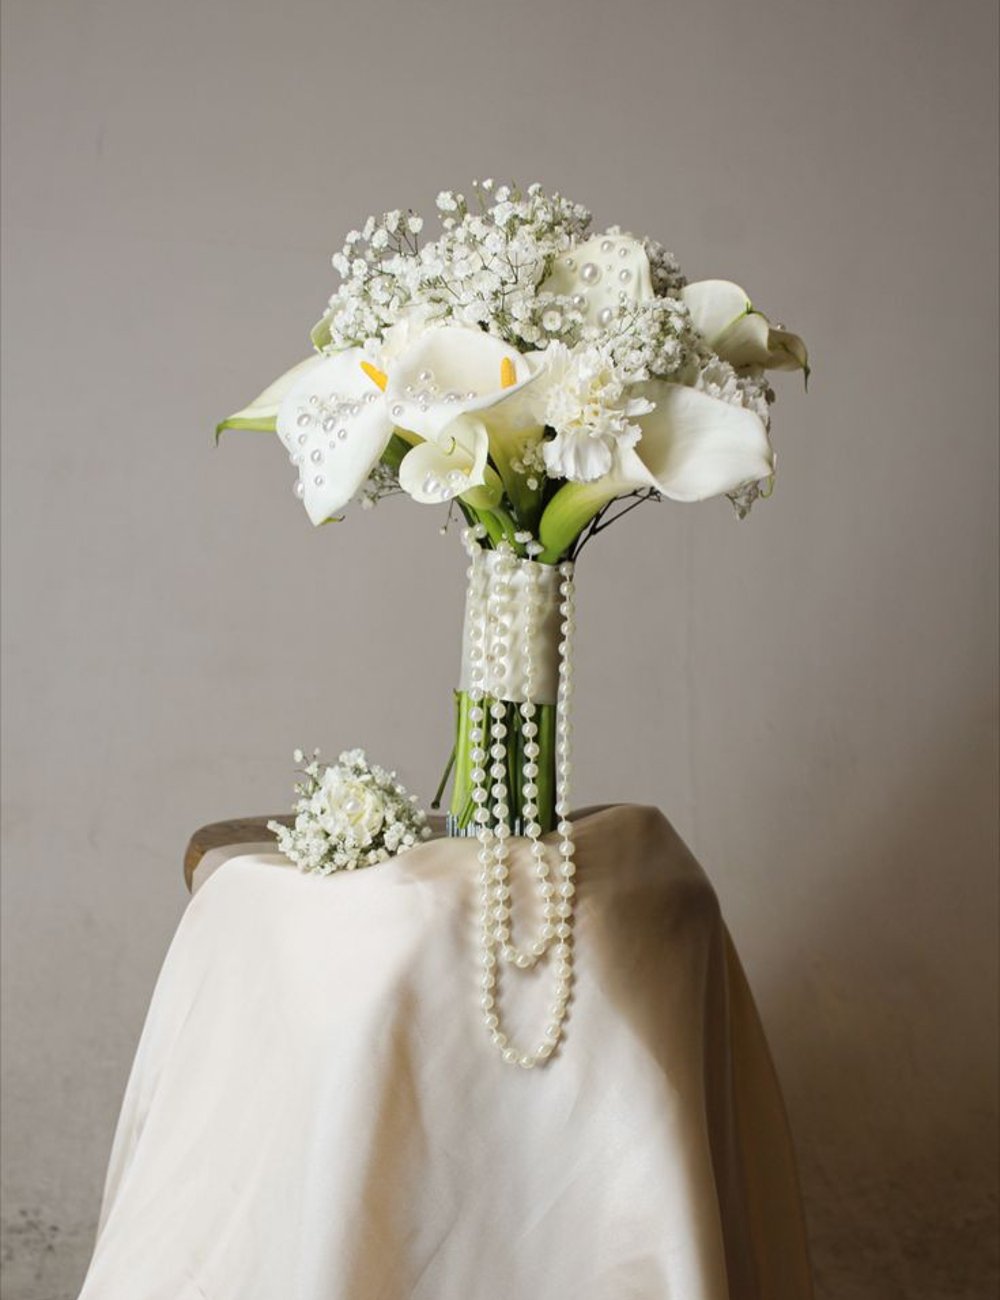 Buquê com pérolas - flores - buquê de noiva branco - casamento - noiva - https://stealthelook.com.br